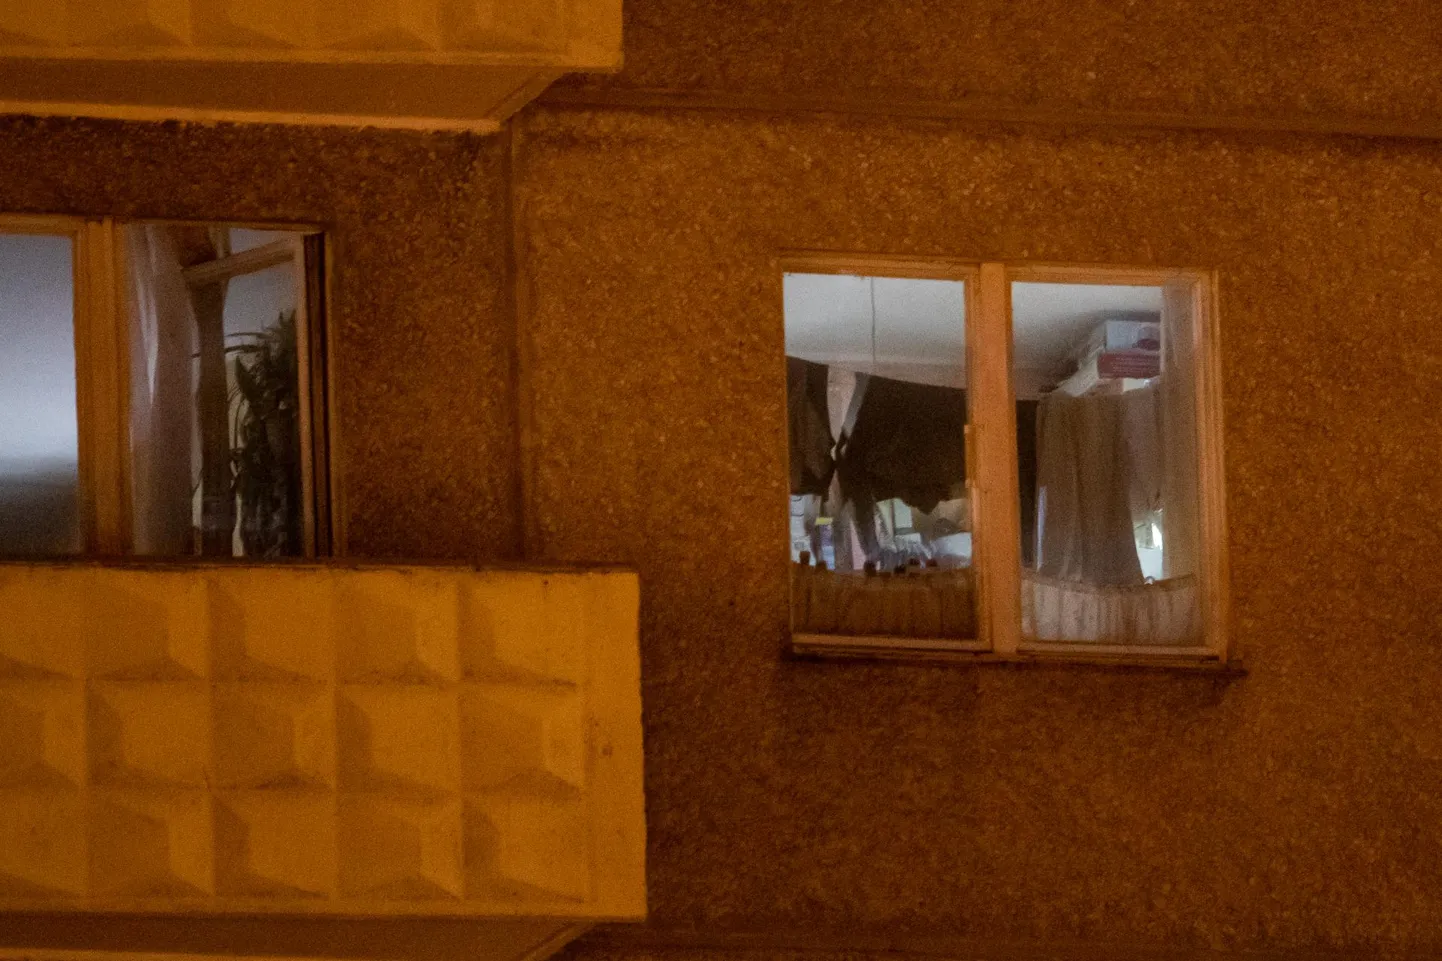 Urmase korterisse kogutud lõhkeainelao tõttu evakueeriti tänavu septembris terveks ööks Õismäe kortermaja ühe trepikoja kõik elanikud. FOTO: Eero Vabamägi